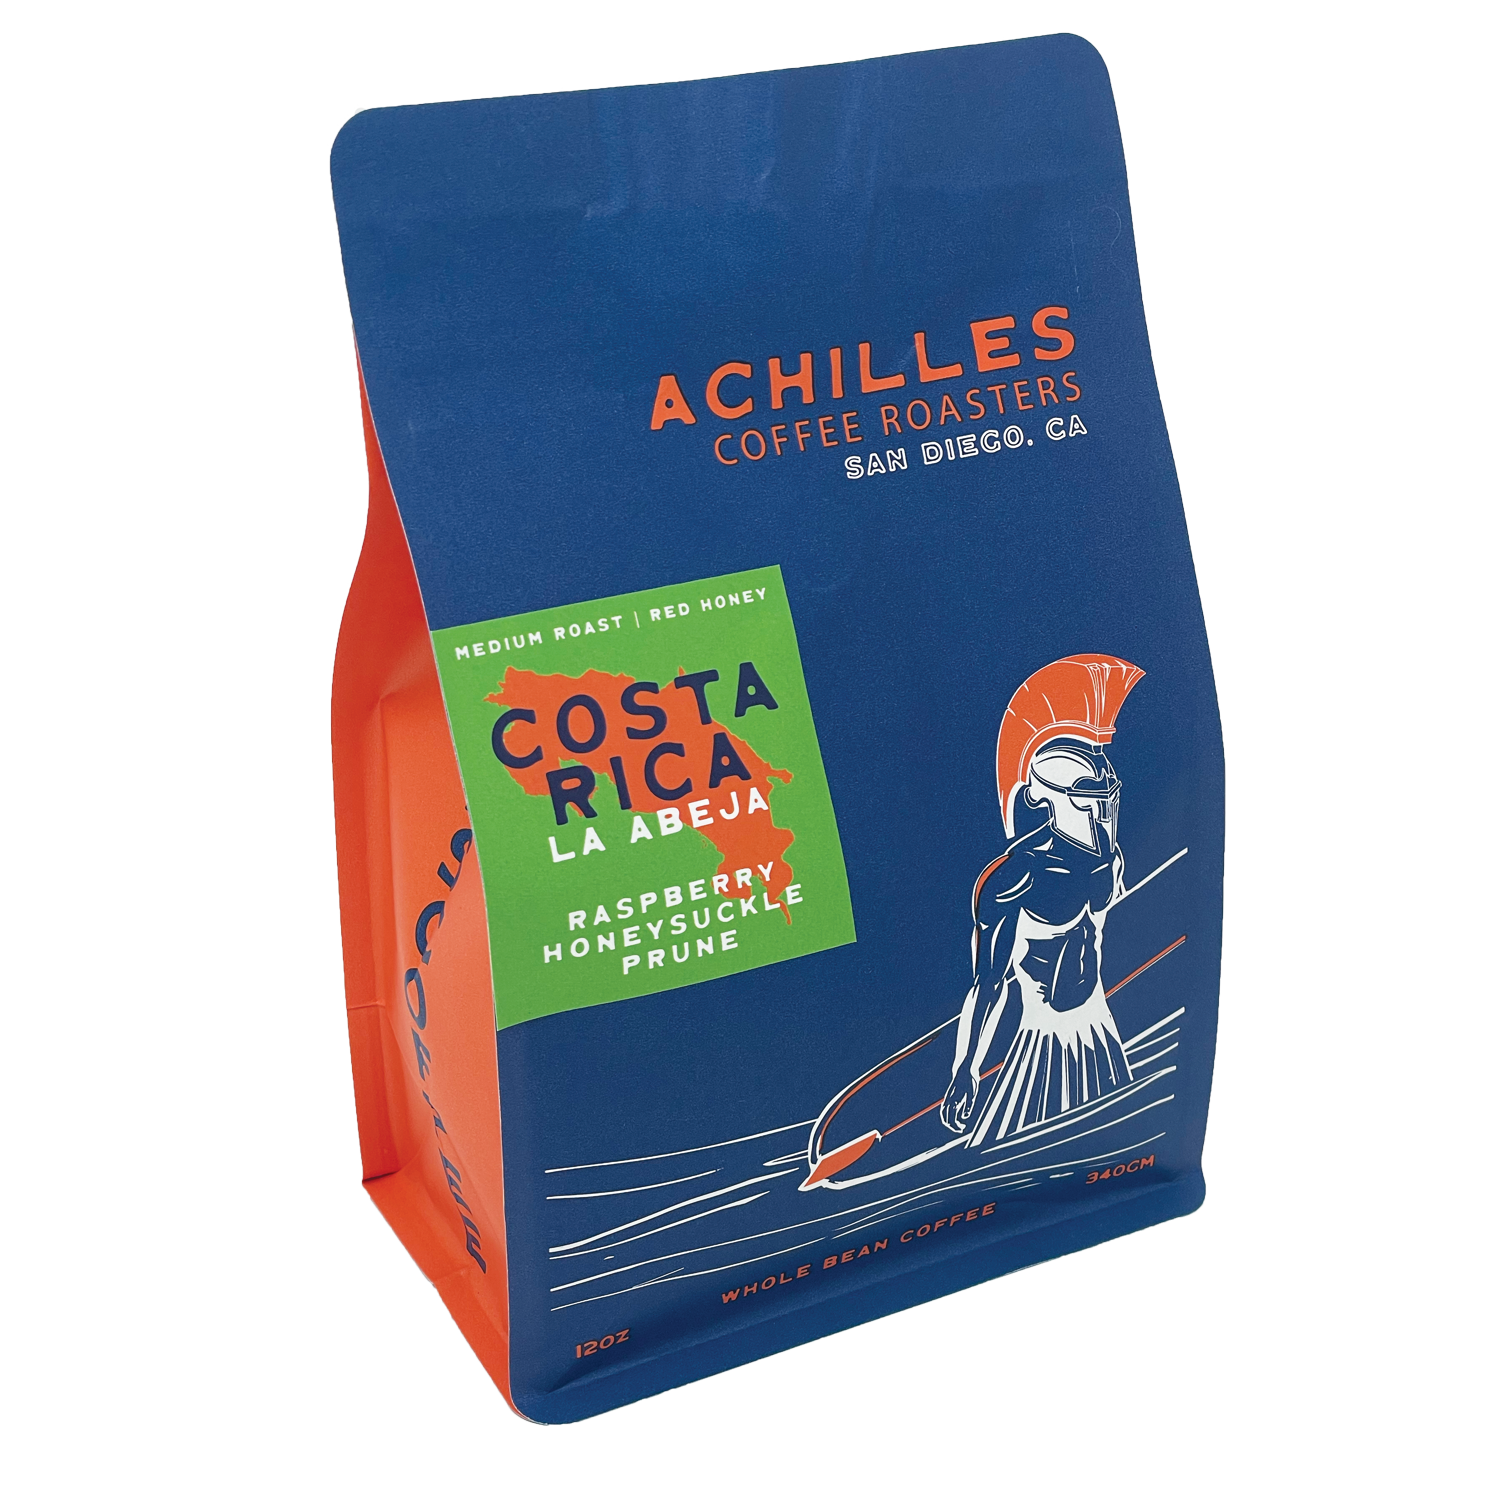 Buy Costa Rica La Abeja Single Origin Coffee